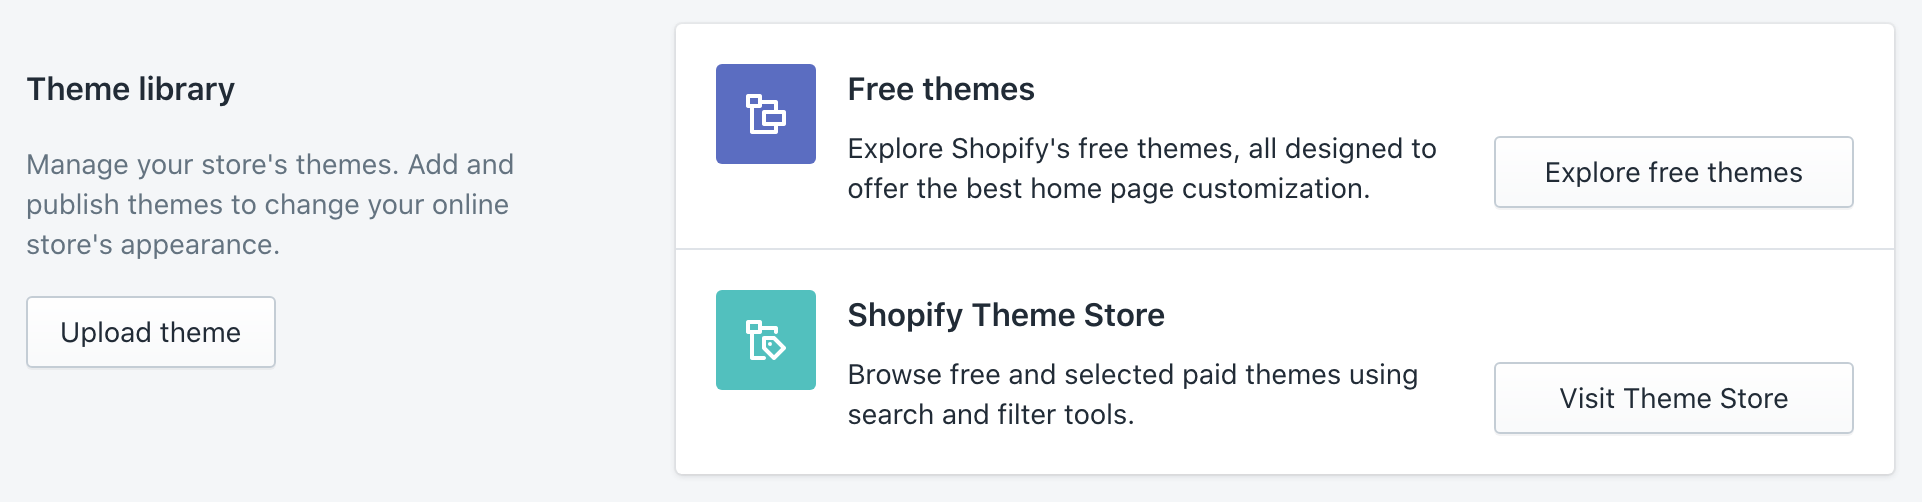 Shopify upload theme - Search